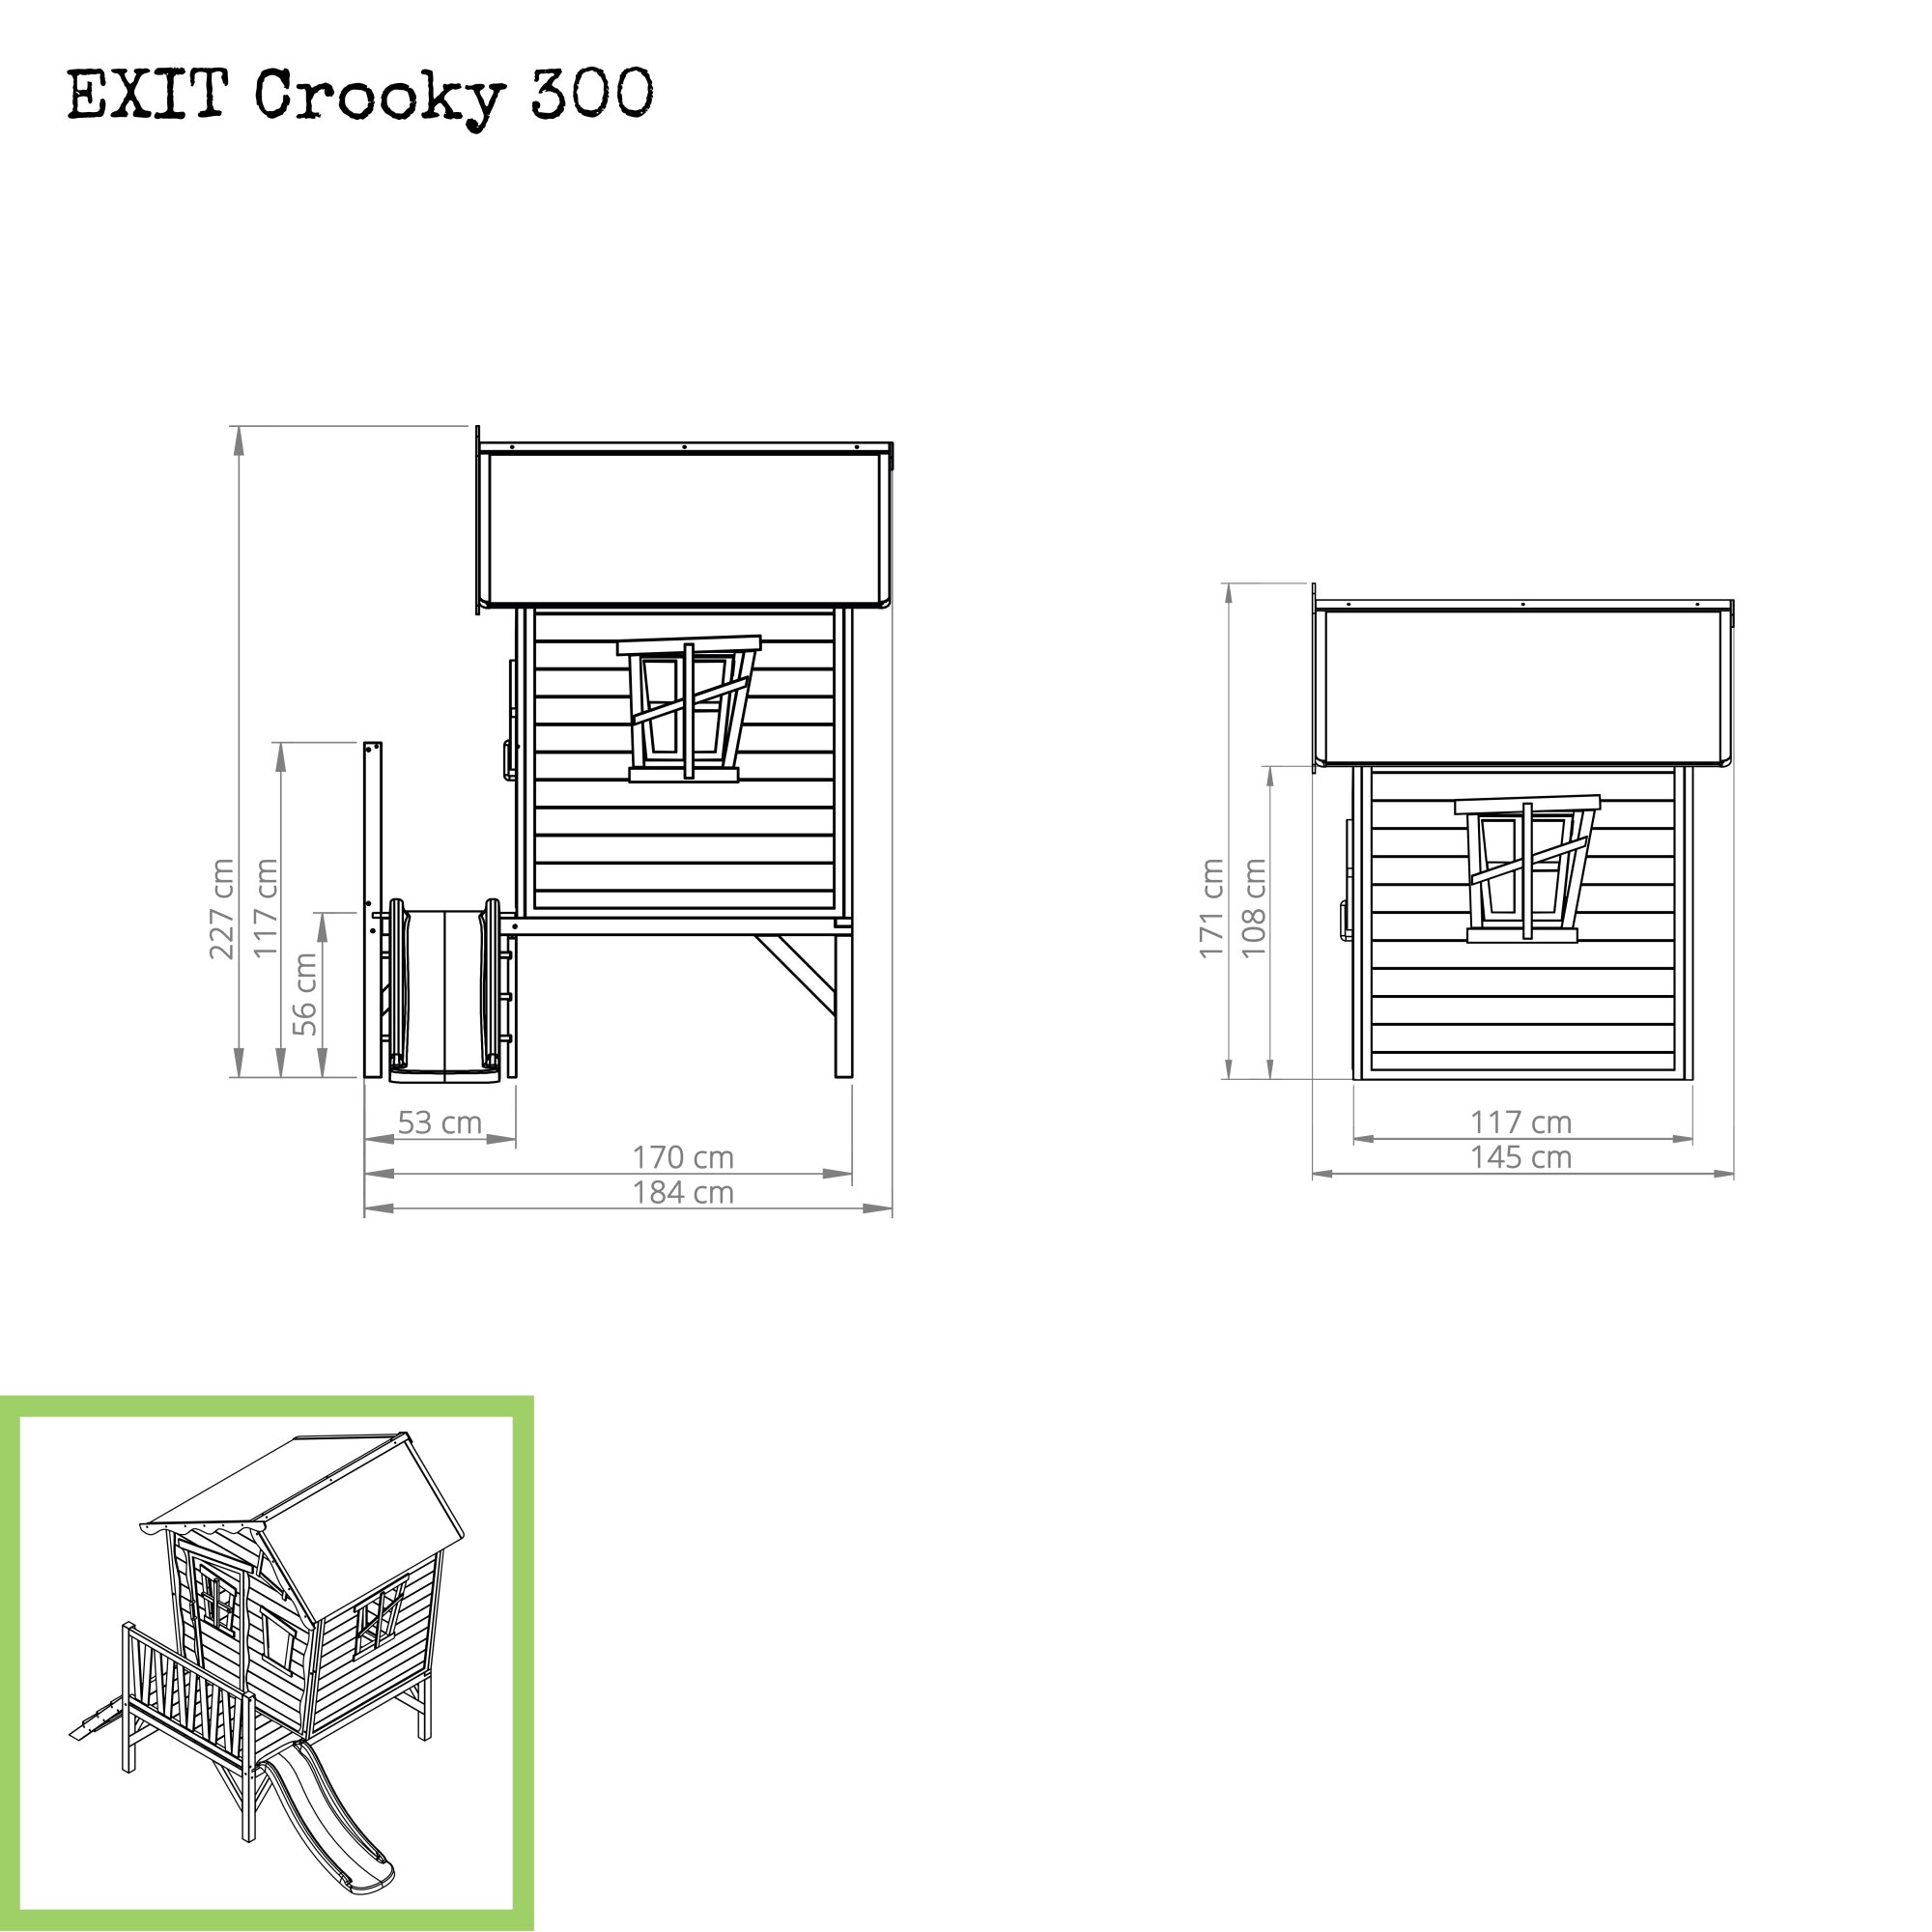 EXIT Crooky 300 Holzspielhaus graubeige Maße